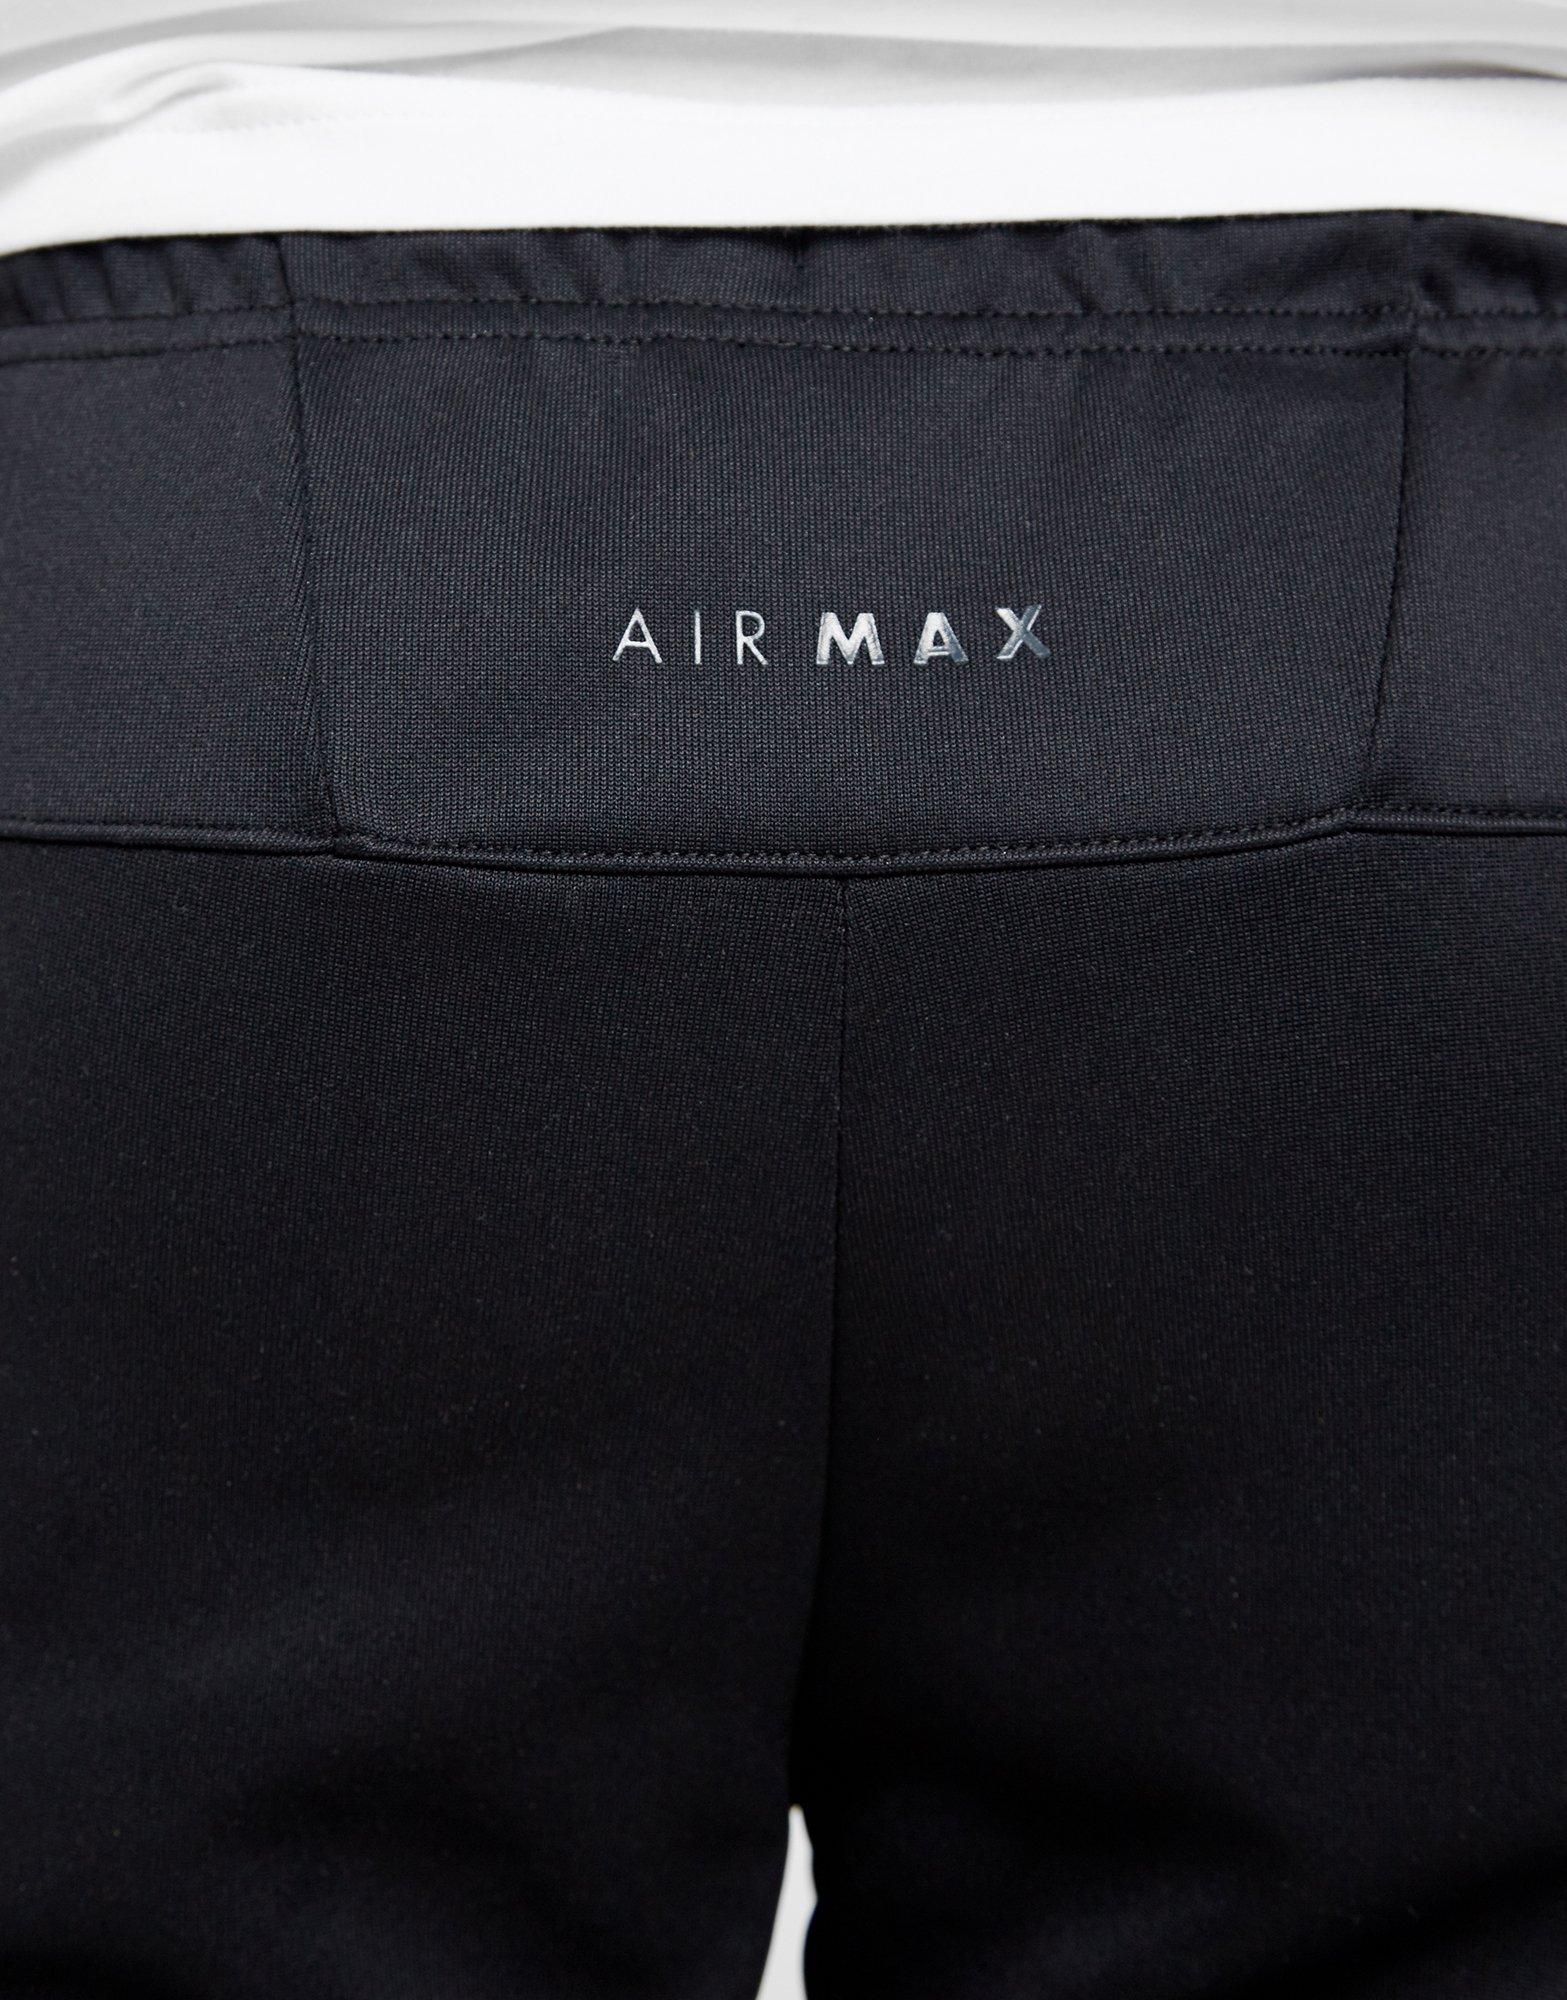 mens nike air max shorts